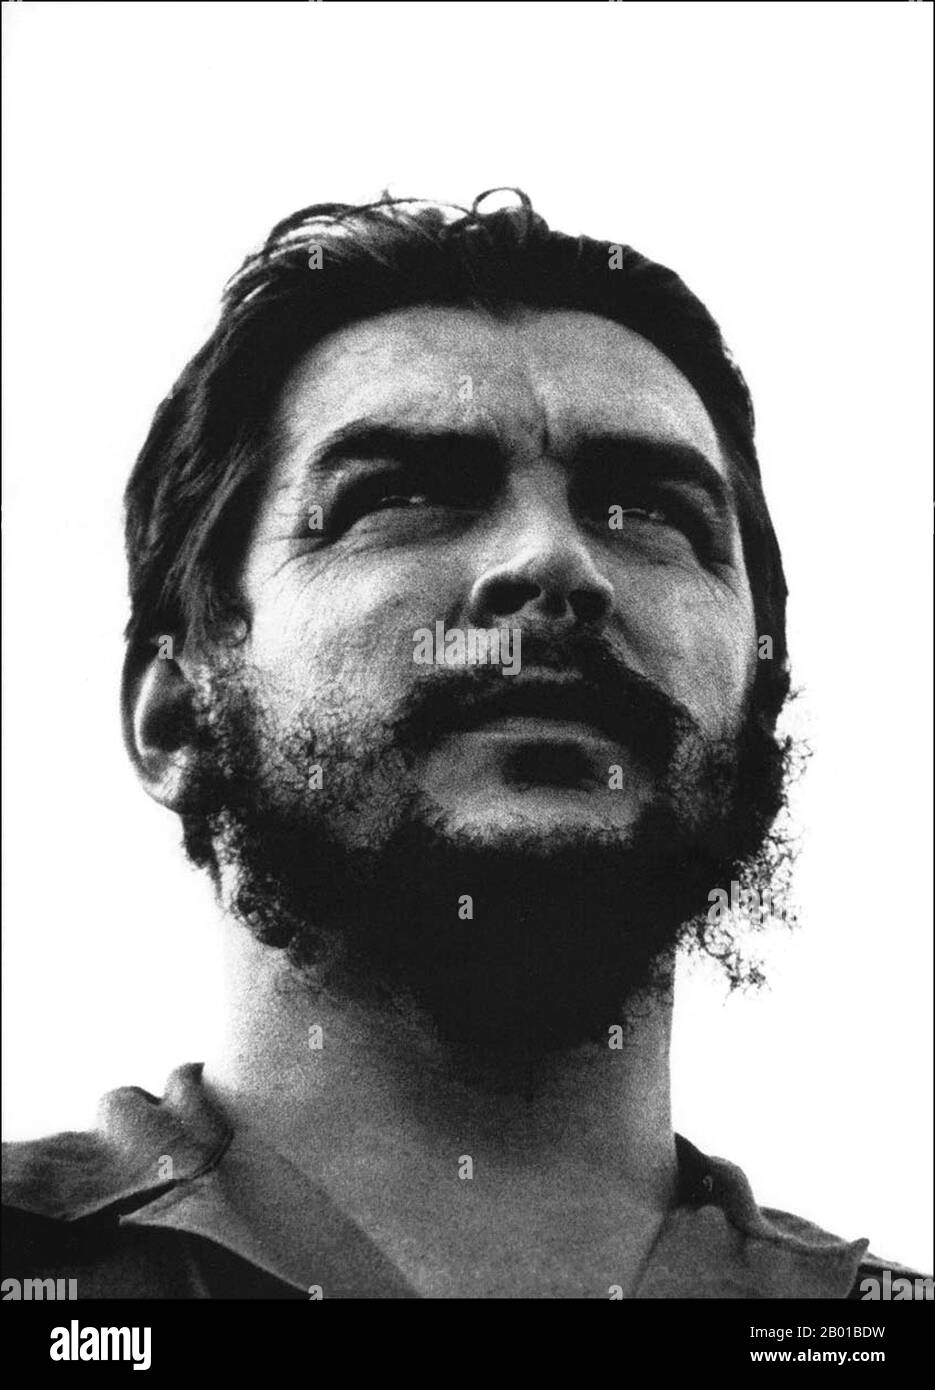 Kuba/Argentinien: Ernesto 'Che' Guevara (14. Juni 1928 - 9. Oktober 1967), allgemein bekannt als El Che oder einfach Che, argentinischer marxistischer Revolutionär, Arzt, Autor, Intellektueller, Guerillaführer, Diplomat und Militärtheoretiker sowie eine wichtige Figur der kubanischen Revolution. Foto von Osvaldo Salas (1914-1992, nicht urheberrechtlich geschützt), c. 1960. Während ihres Aufenthalts in Mexiko-Stadt traf Guevara Raúl und Fidel Castro, schloss sich ihrer Bewegung vom 26.. Juli an und segelte an Bord der Yacht Granma nach Kuba, mit der Absicht, den von den USA unterstützten kubanischen Diktator Fulgencio Batista zu stürzen. Stockfoto